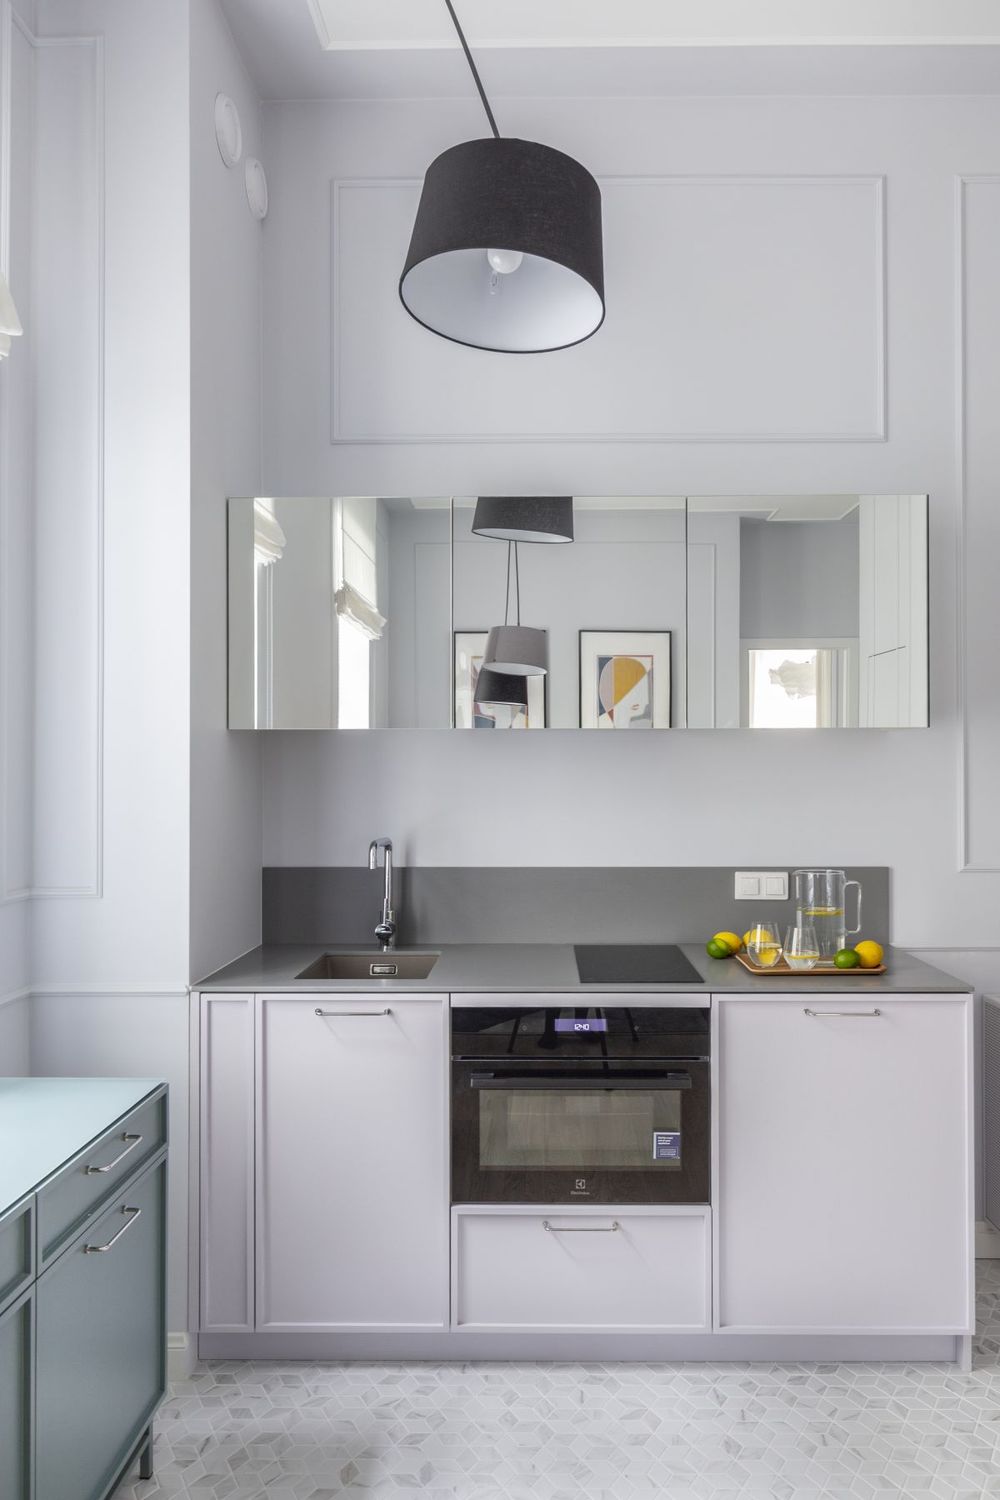 Phòng bếp và khu vực ăn uống bố trí đối diện phòng khách với sàn ốp gạch sáng màu, 'tone sur tone' với tủ bếp và màu tường. Đặc biệt, hệ thống tủ bếp trên với cửa ốp gương giúp tạo chiều sâu và 'nhân rộng' không gian nhỏ.